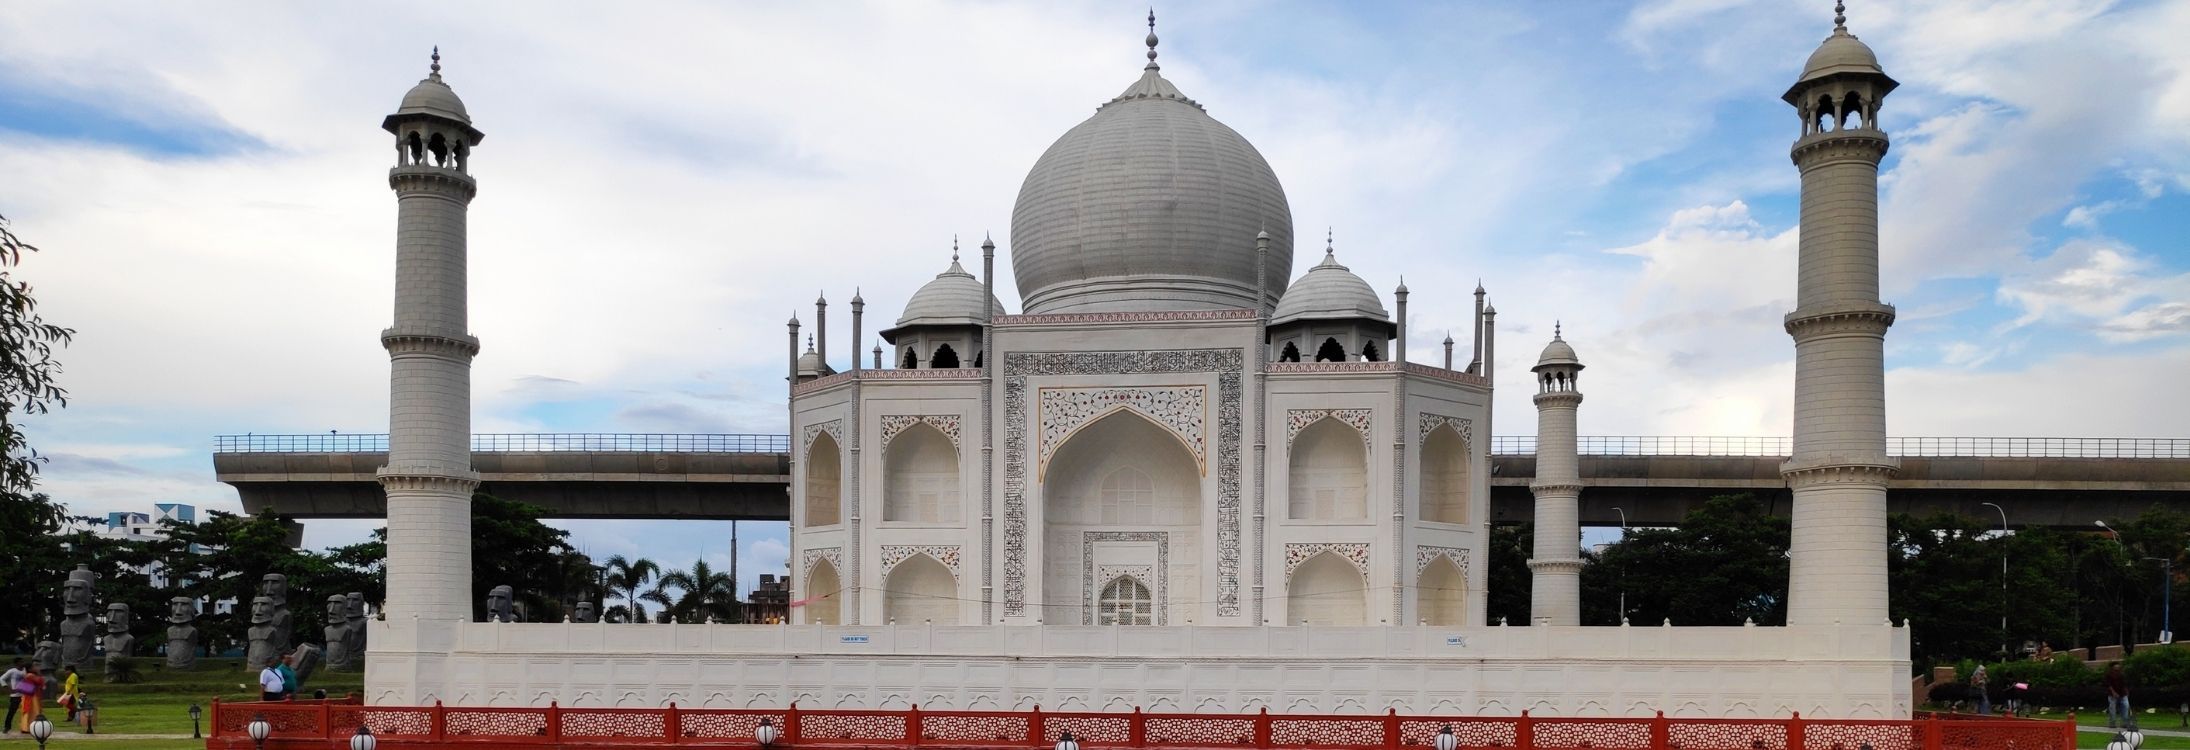 1. Taj Mahal, India